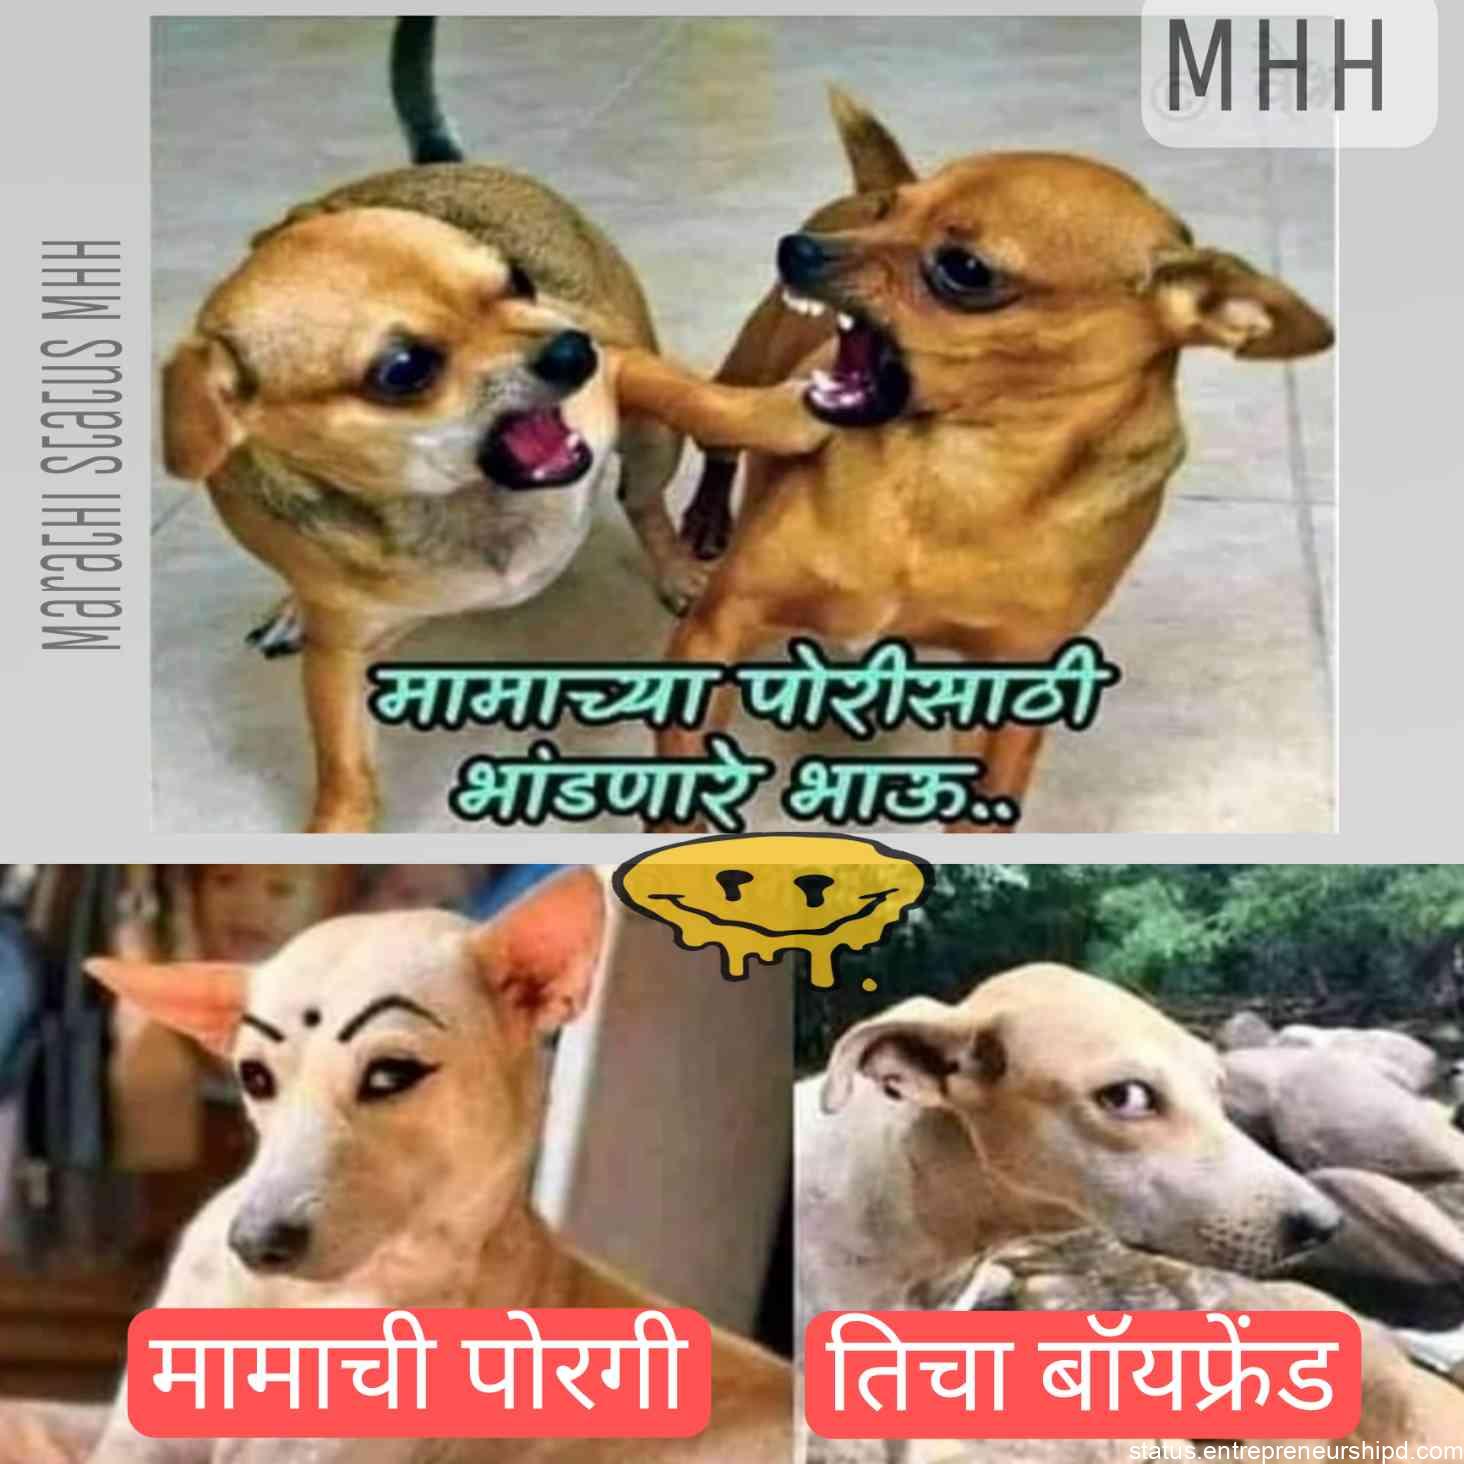 Marathi memes two brothers